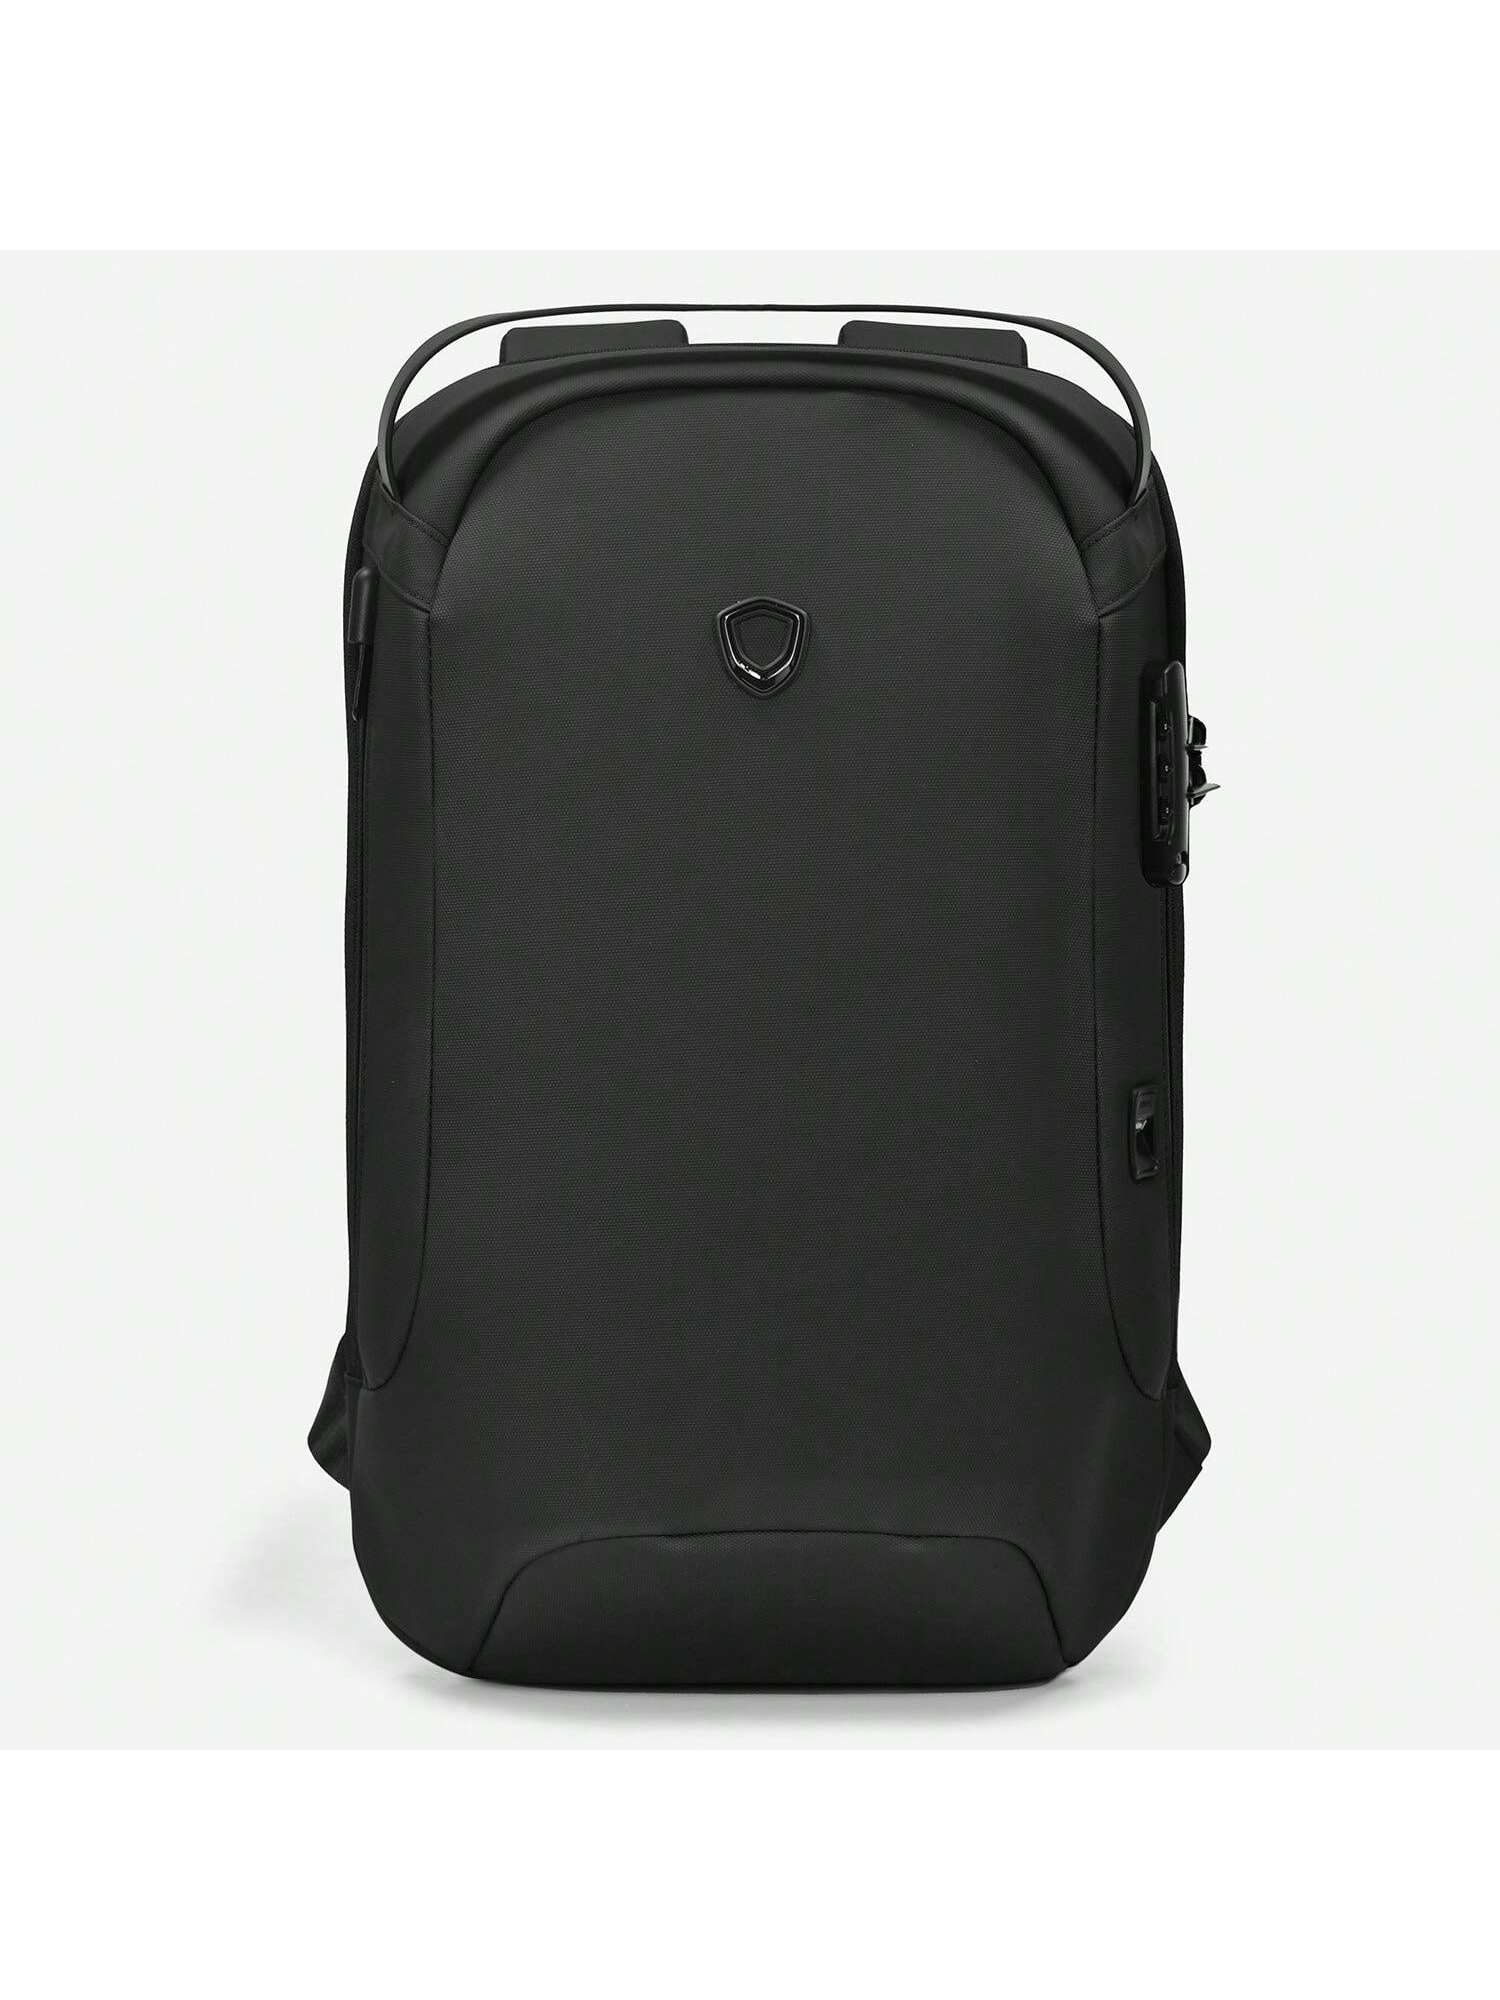 Матовый водостойкий рюкзак Frailey с USB-портом и кодовым замком, черный